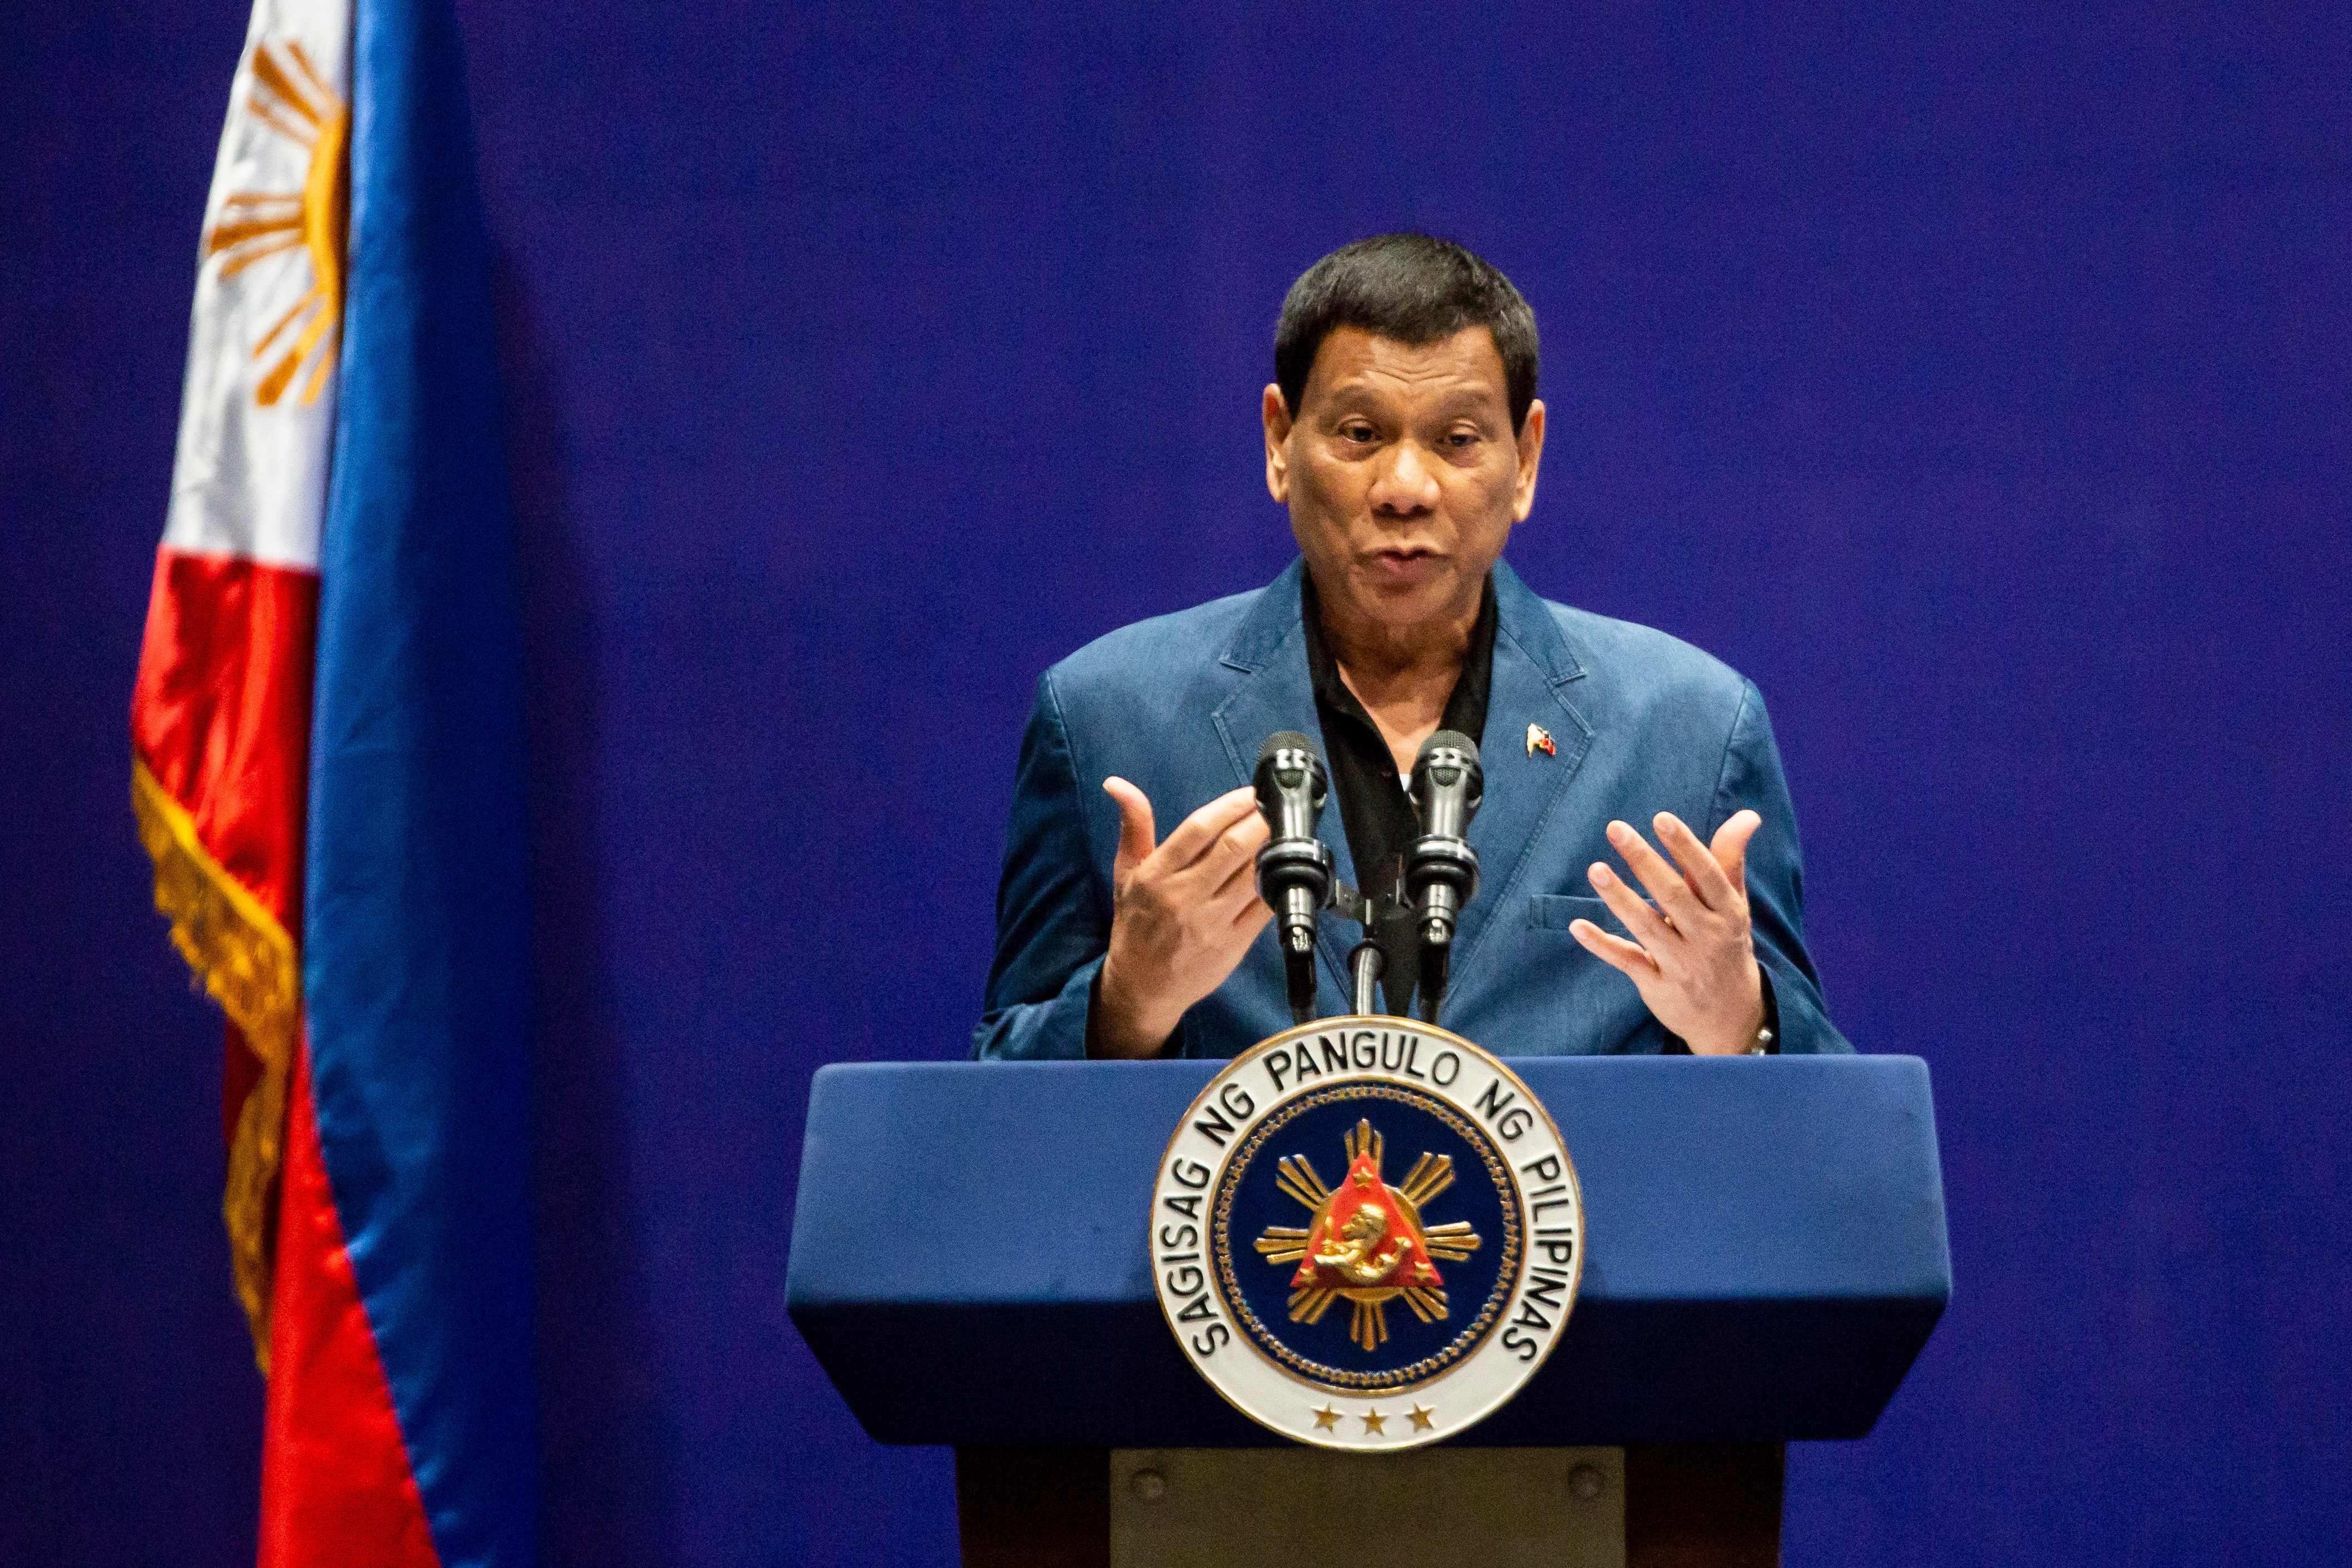 Duterte addresses the crowd at Kai Tak Cruise Terminal. Photo: AFP